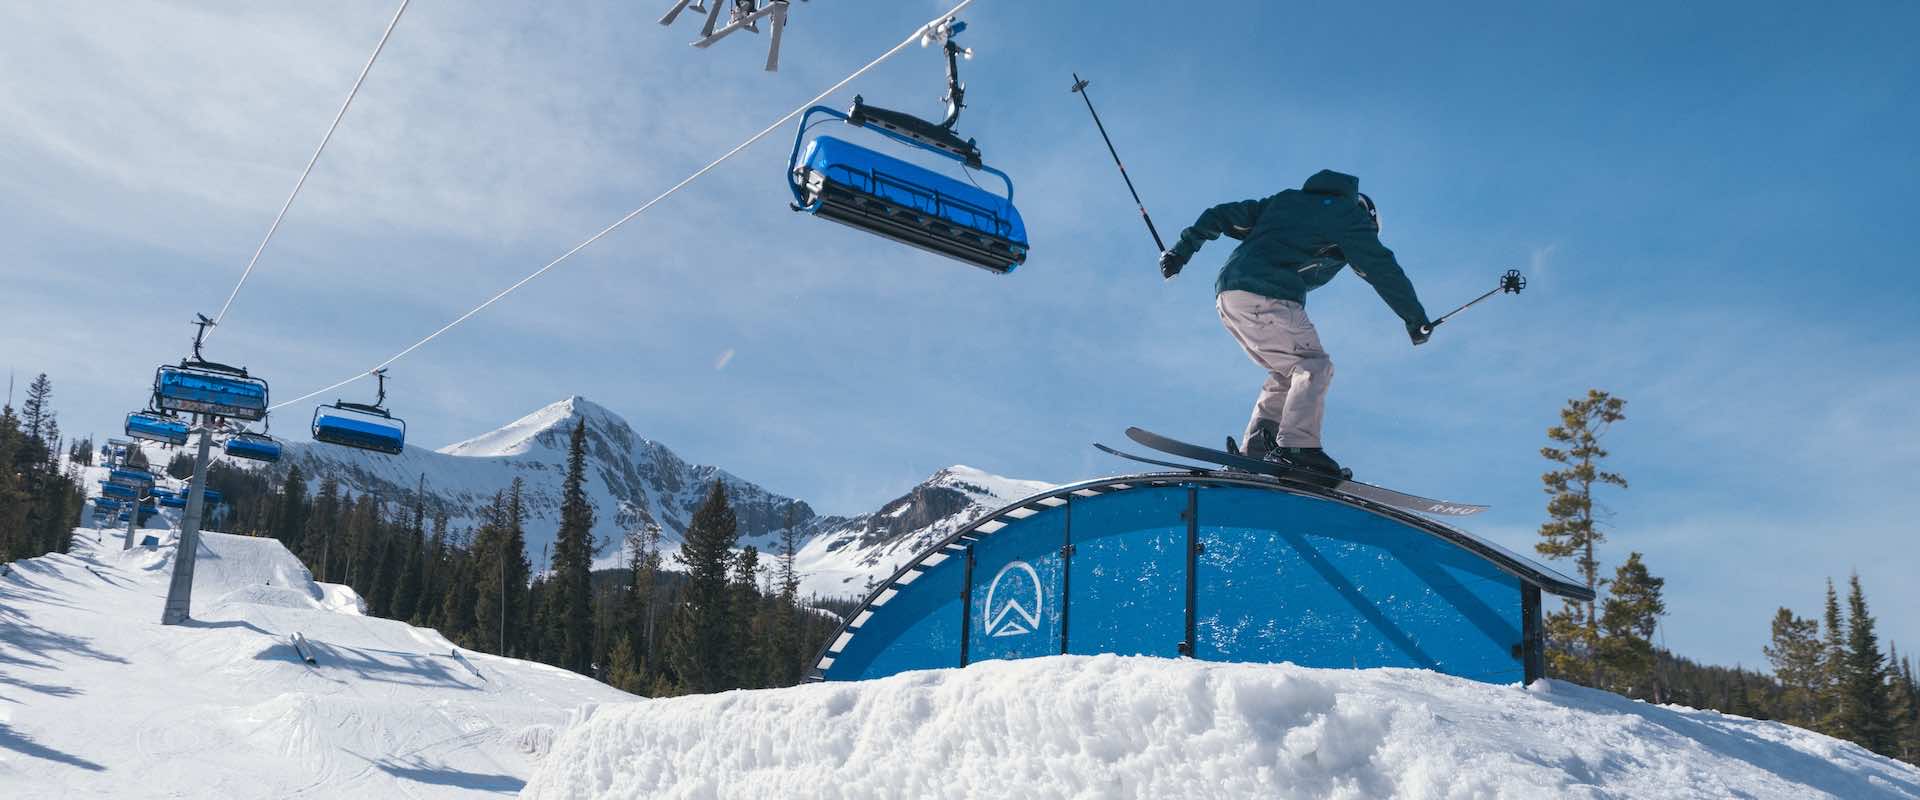 Skier on a terrain park rail